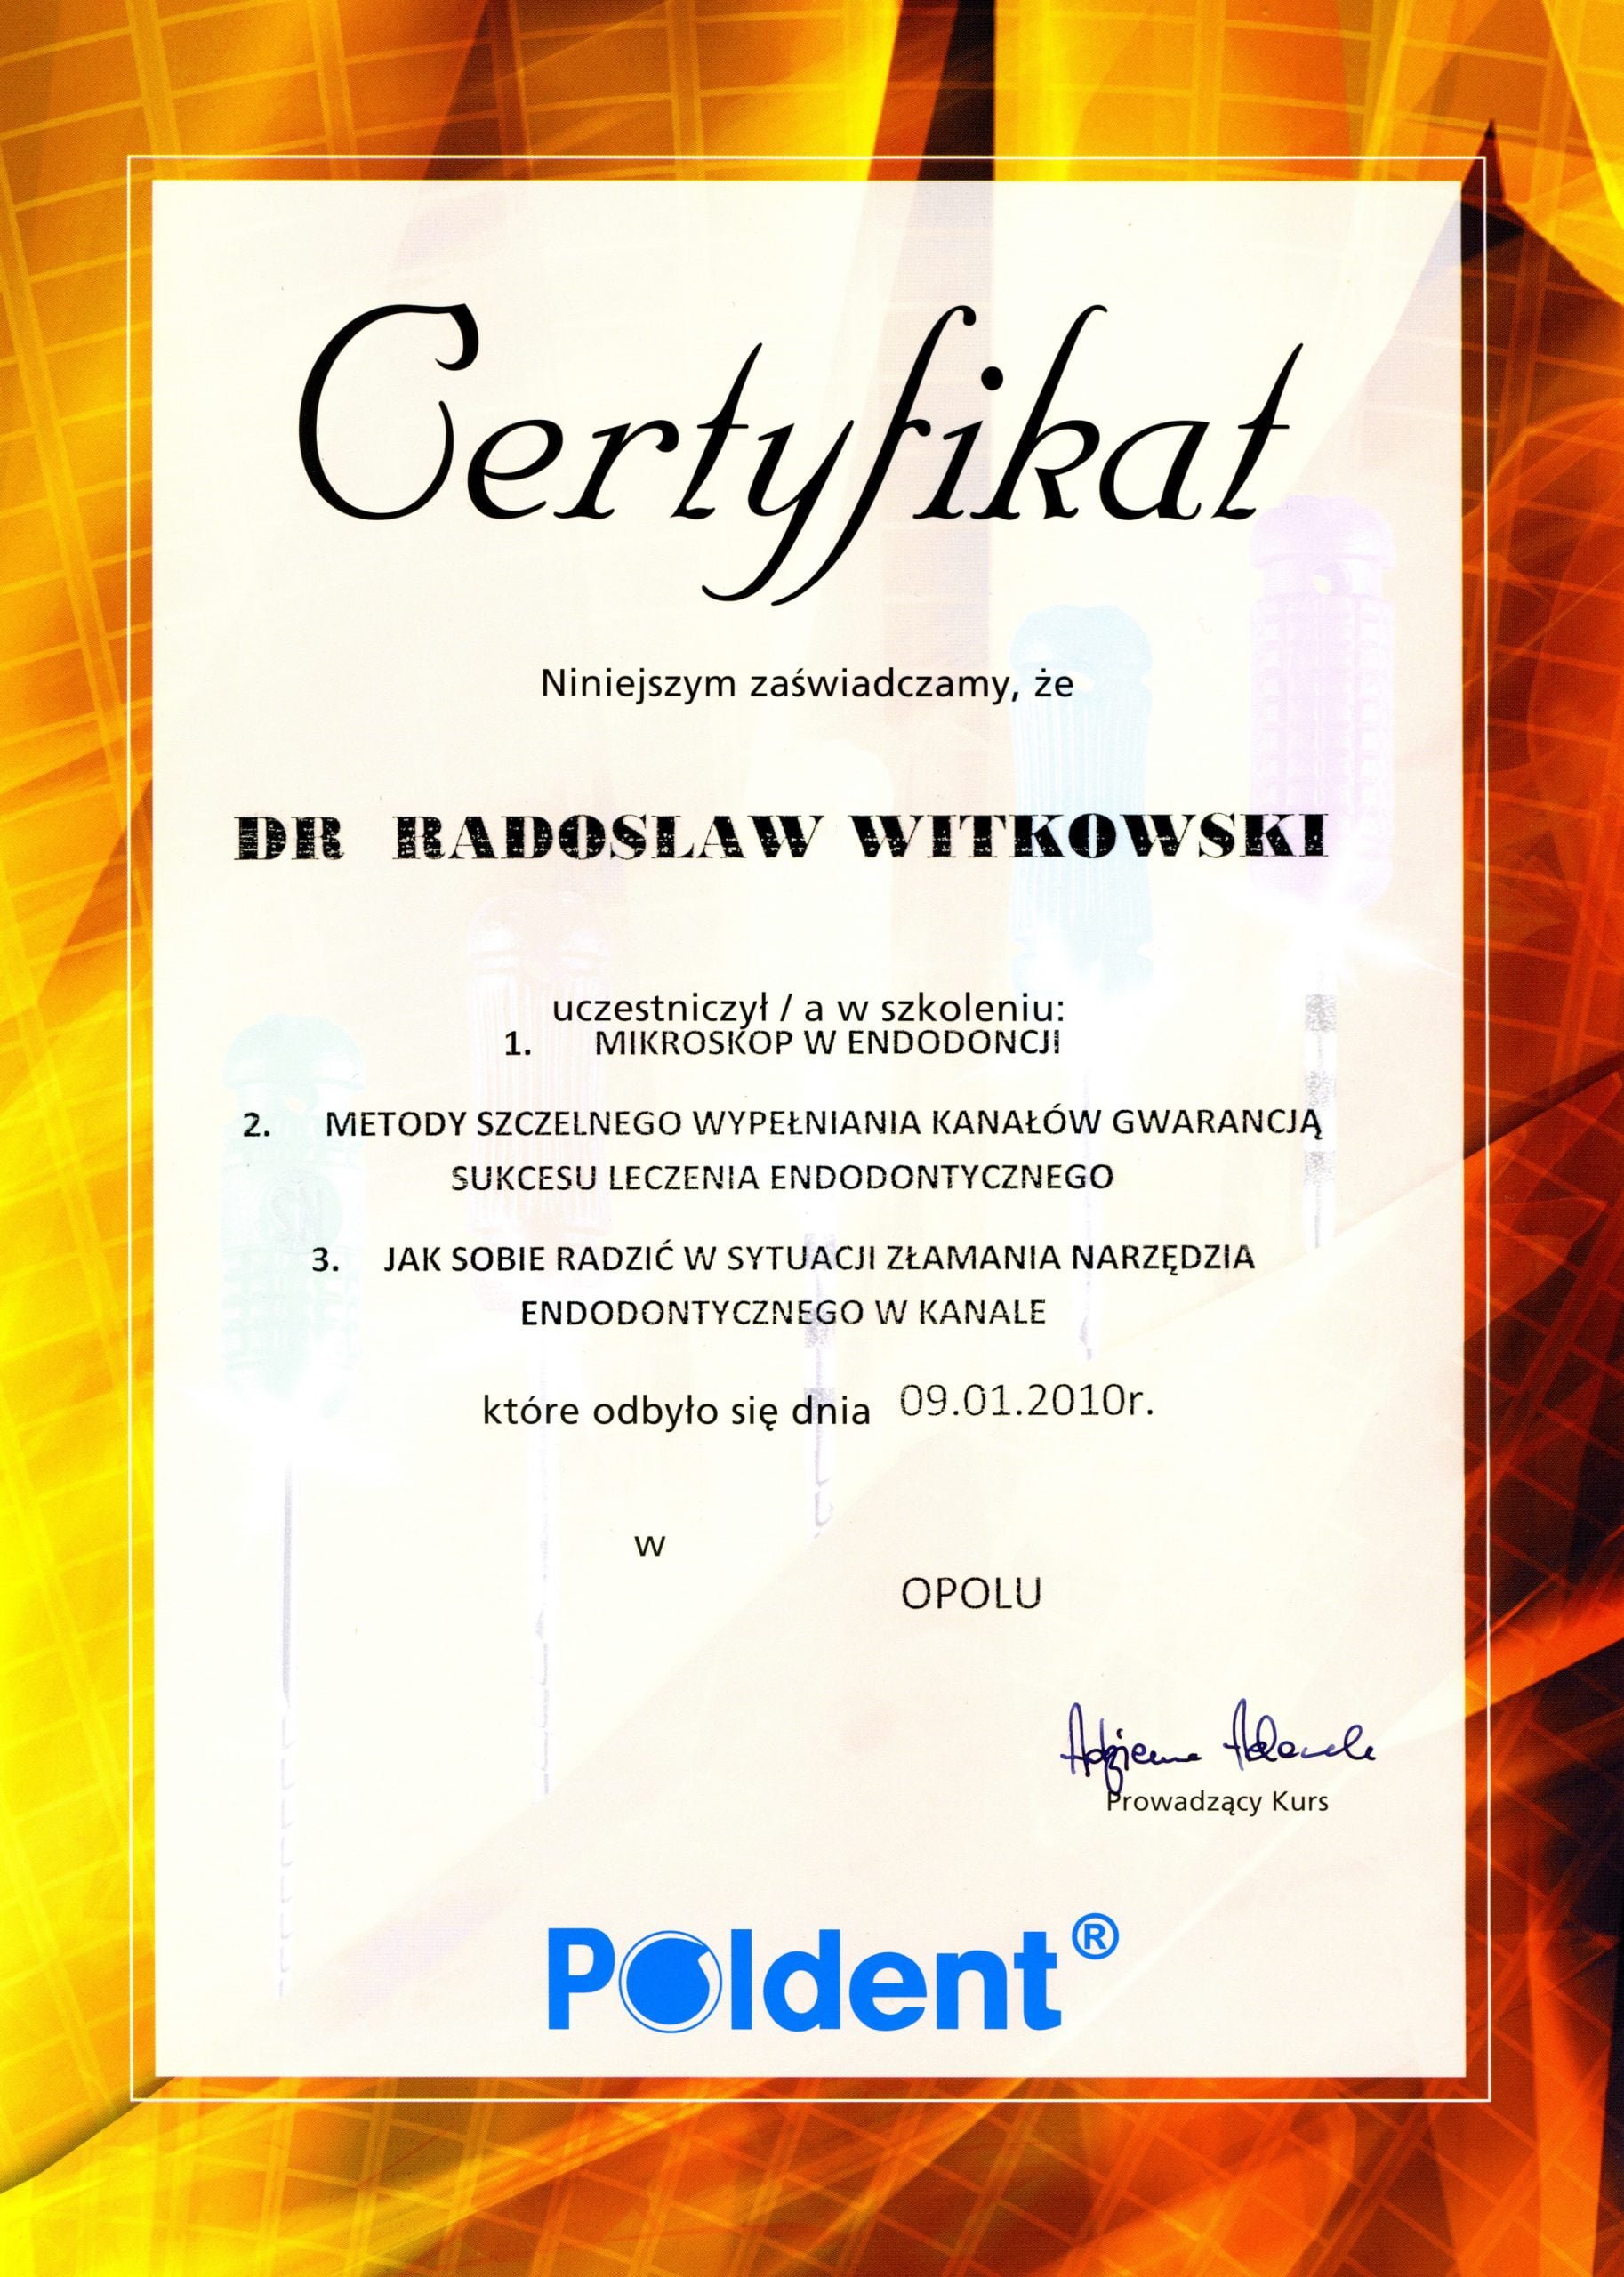 Radosław Witkowski certyfikat 79